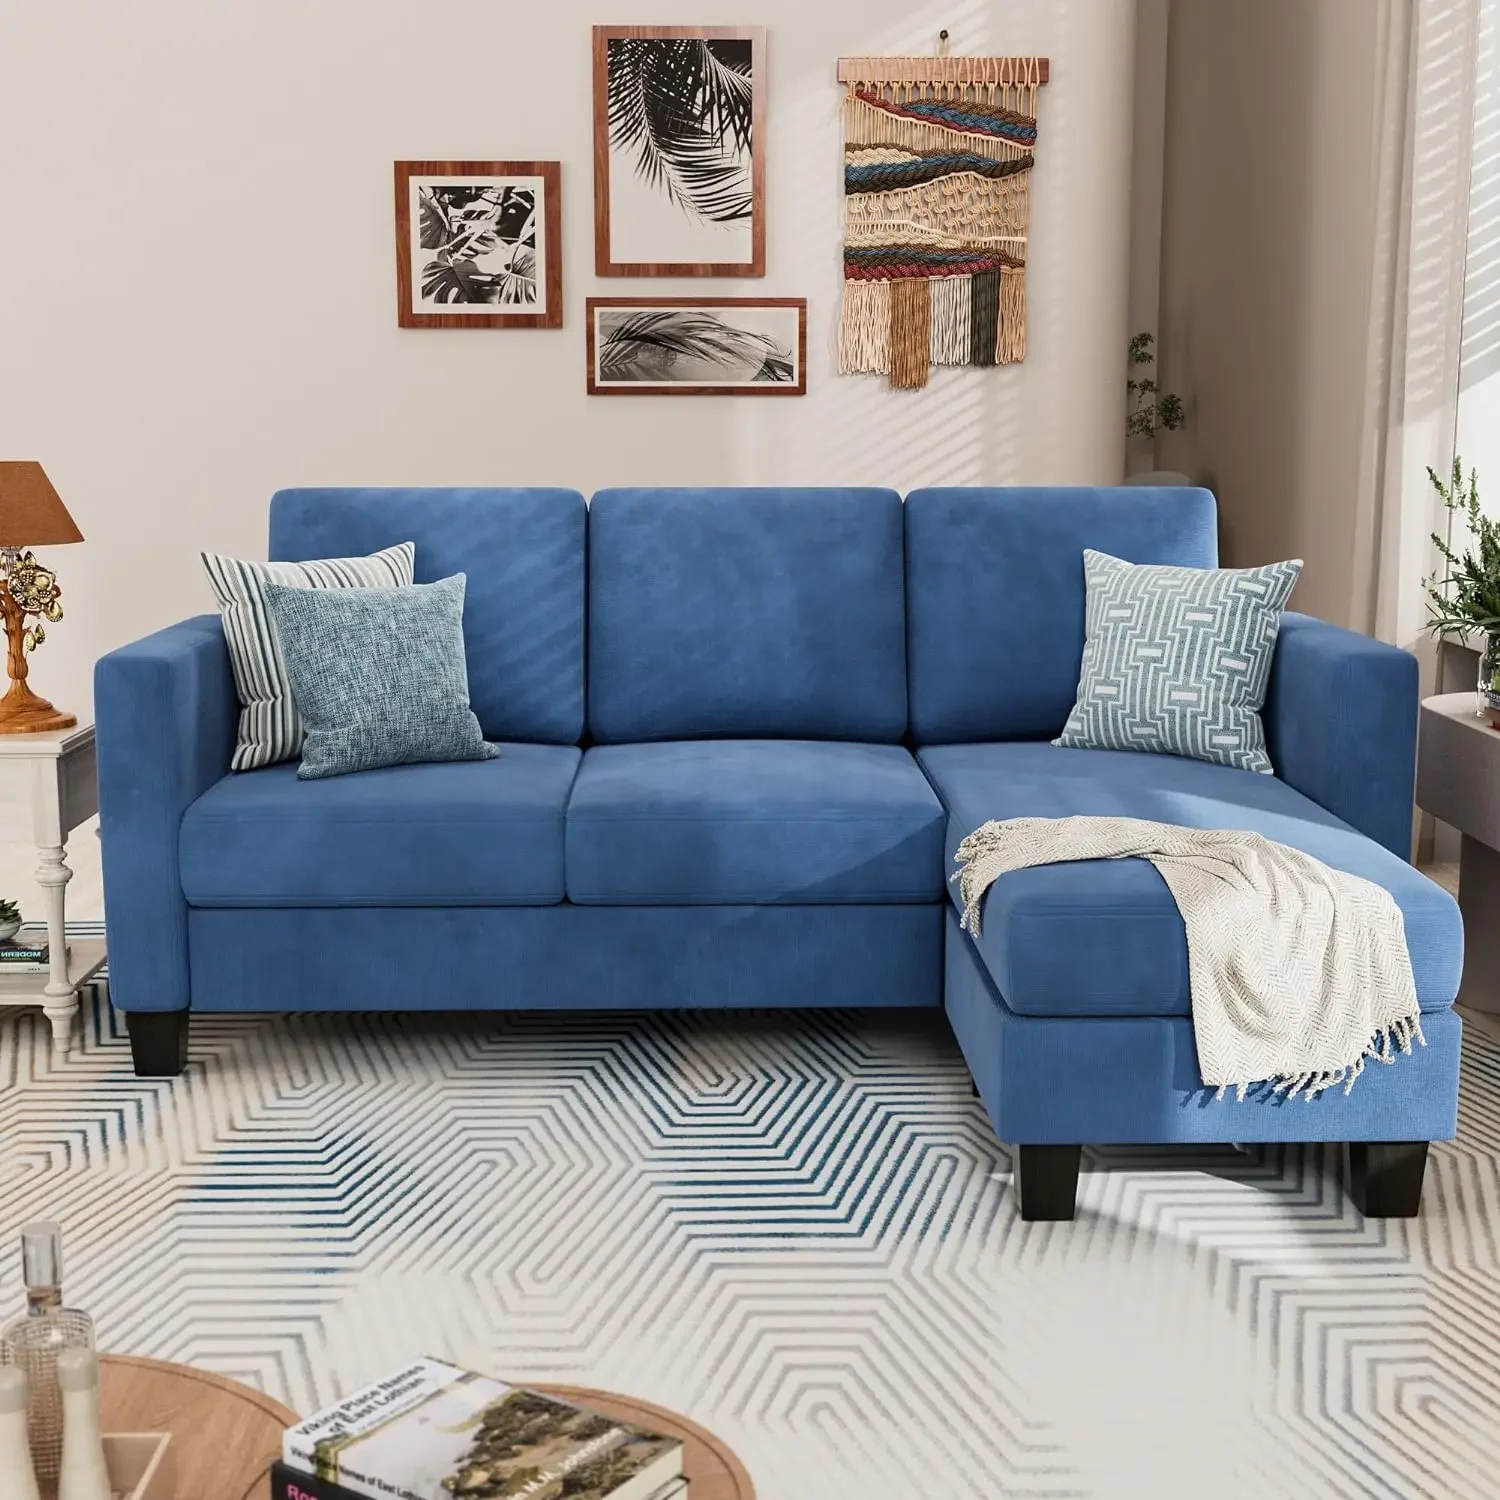 

Мебель мебель yeshomy трансформируемый секционный 3 L-образный диван мягкое сиденье с современной льняной тканью, маленькие космические диваны для гостиной